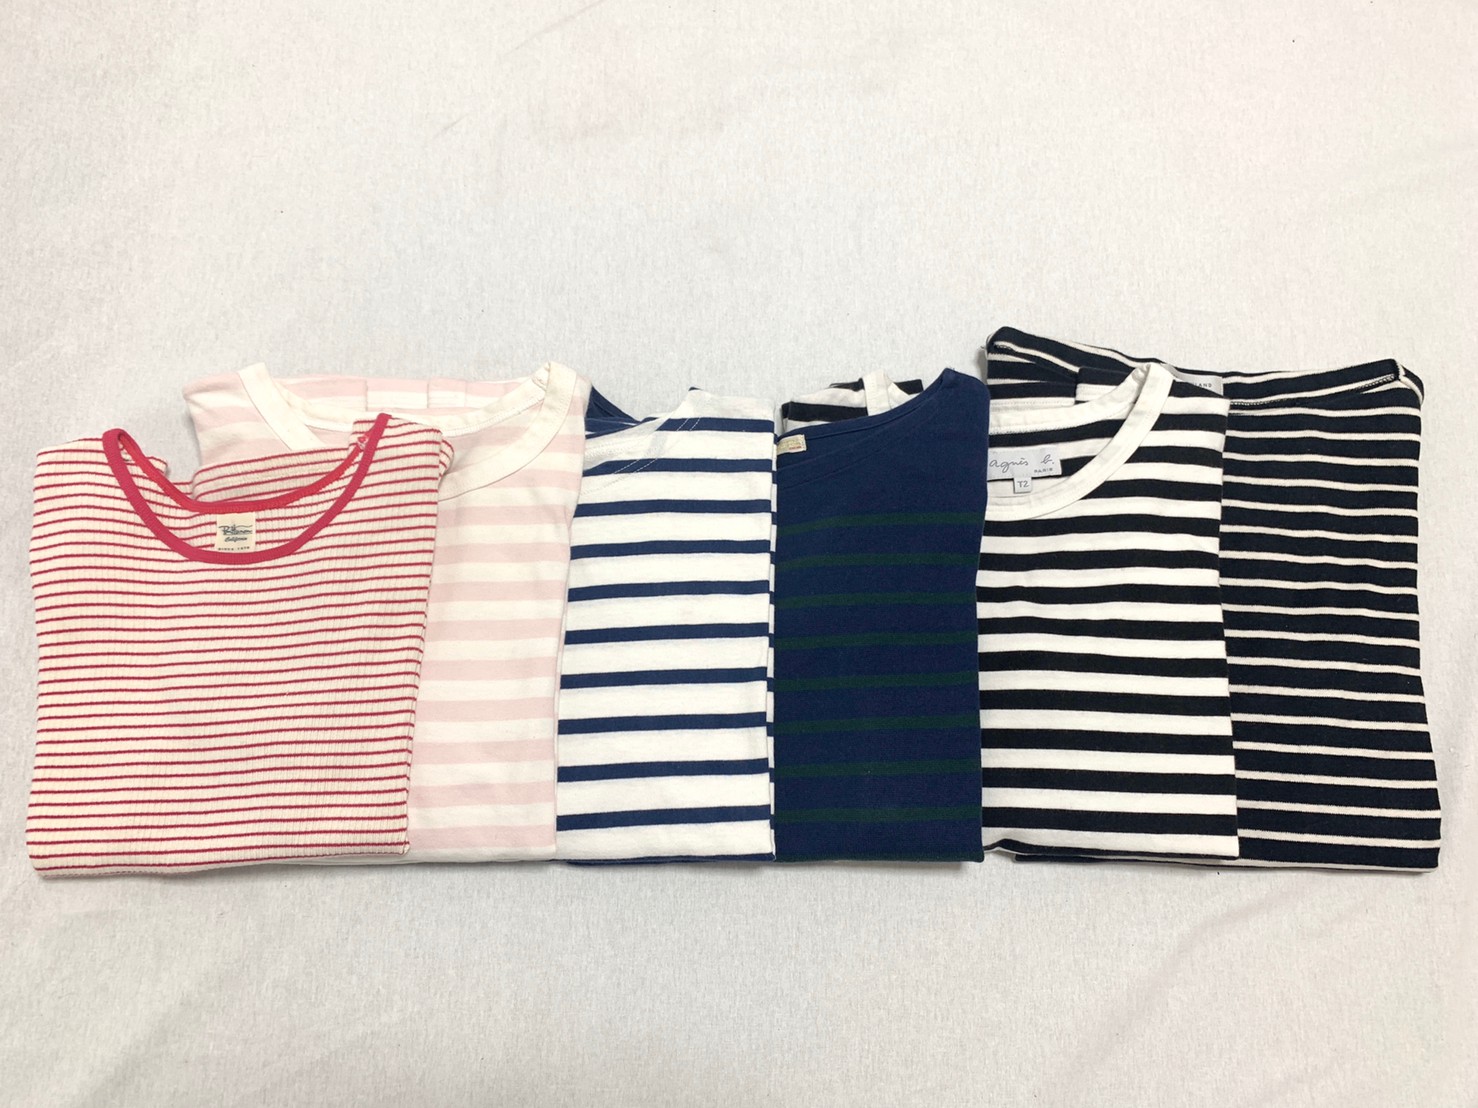 ボーダーtシャツの夏コーデ11選 色やデザインなどトレンドを紹介 22レディース